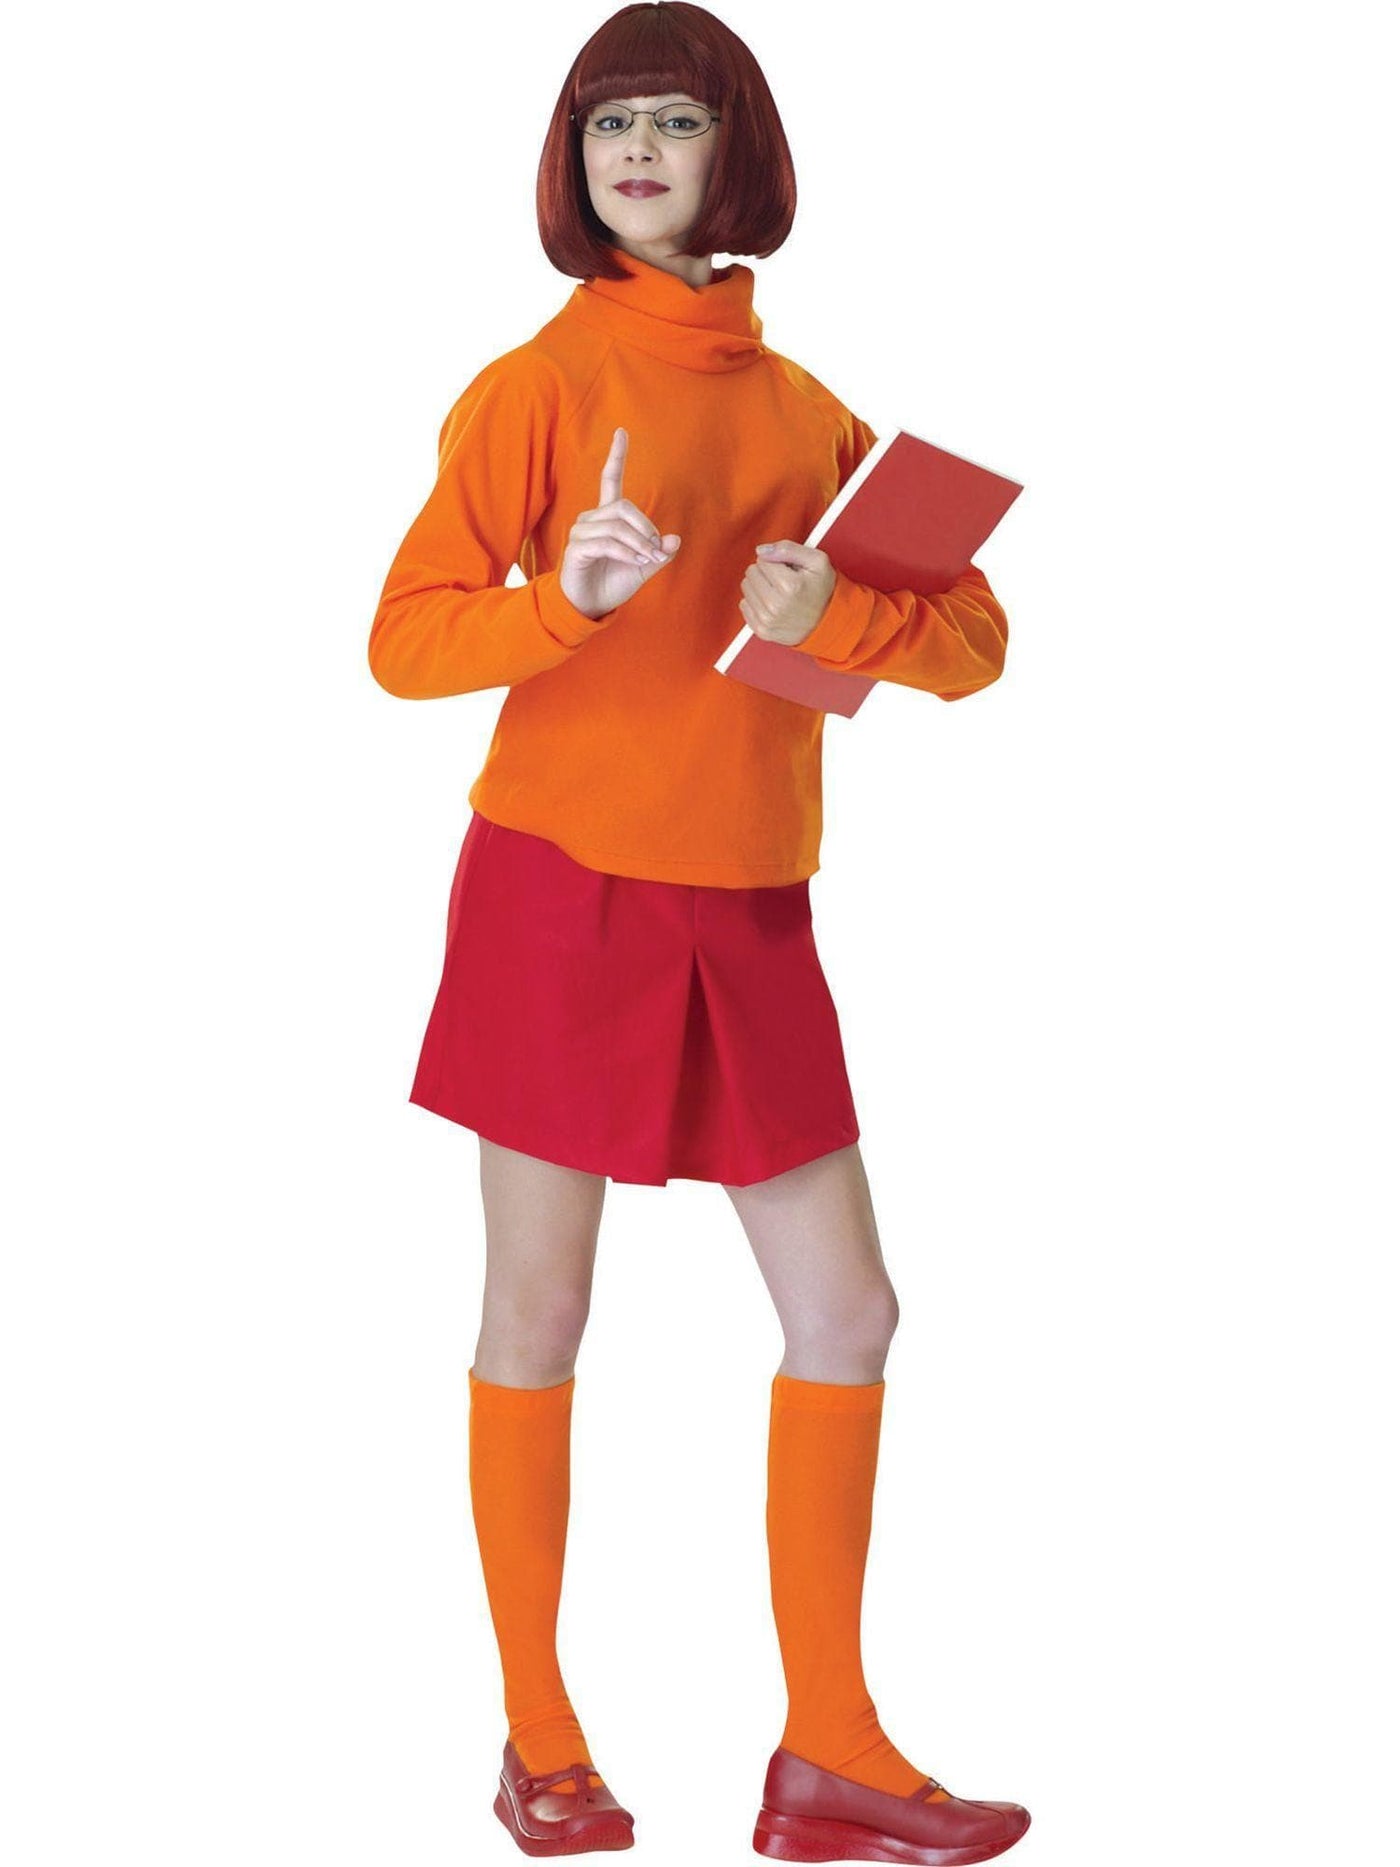 Scooby-Doo Velma Costume for Women